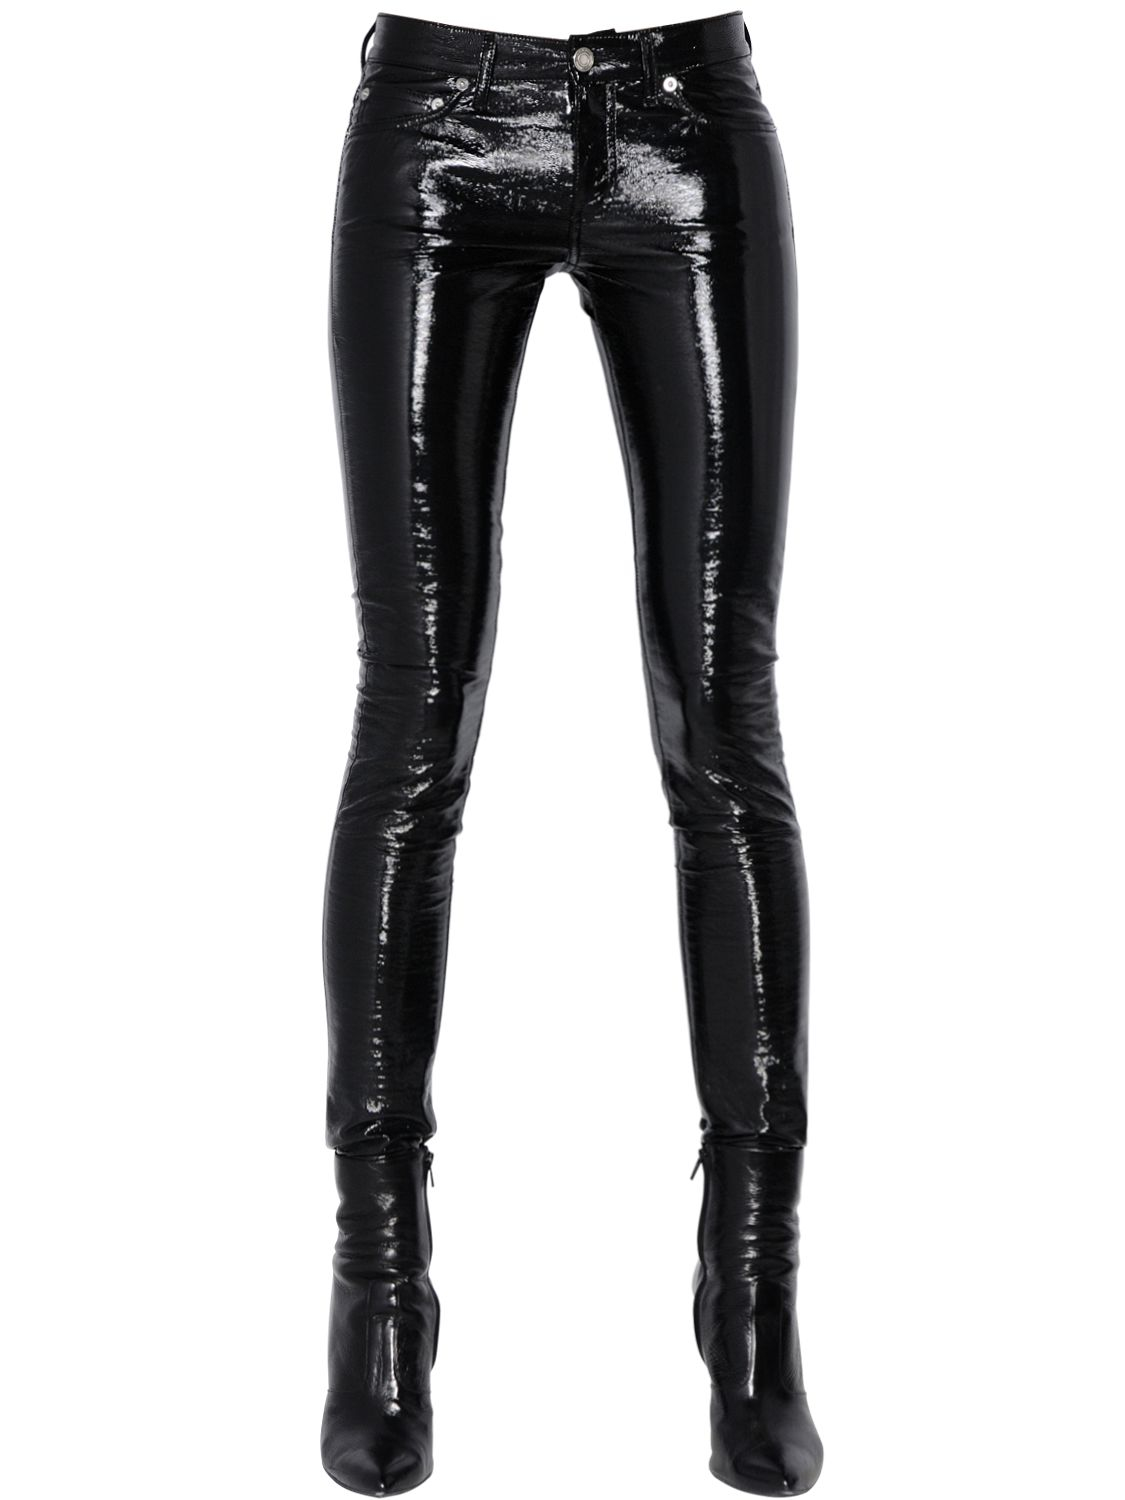 Lyst - Saint Laurent Low Rise Faux Patent Leather Pants in Black